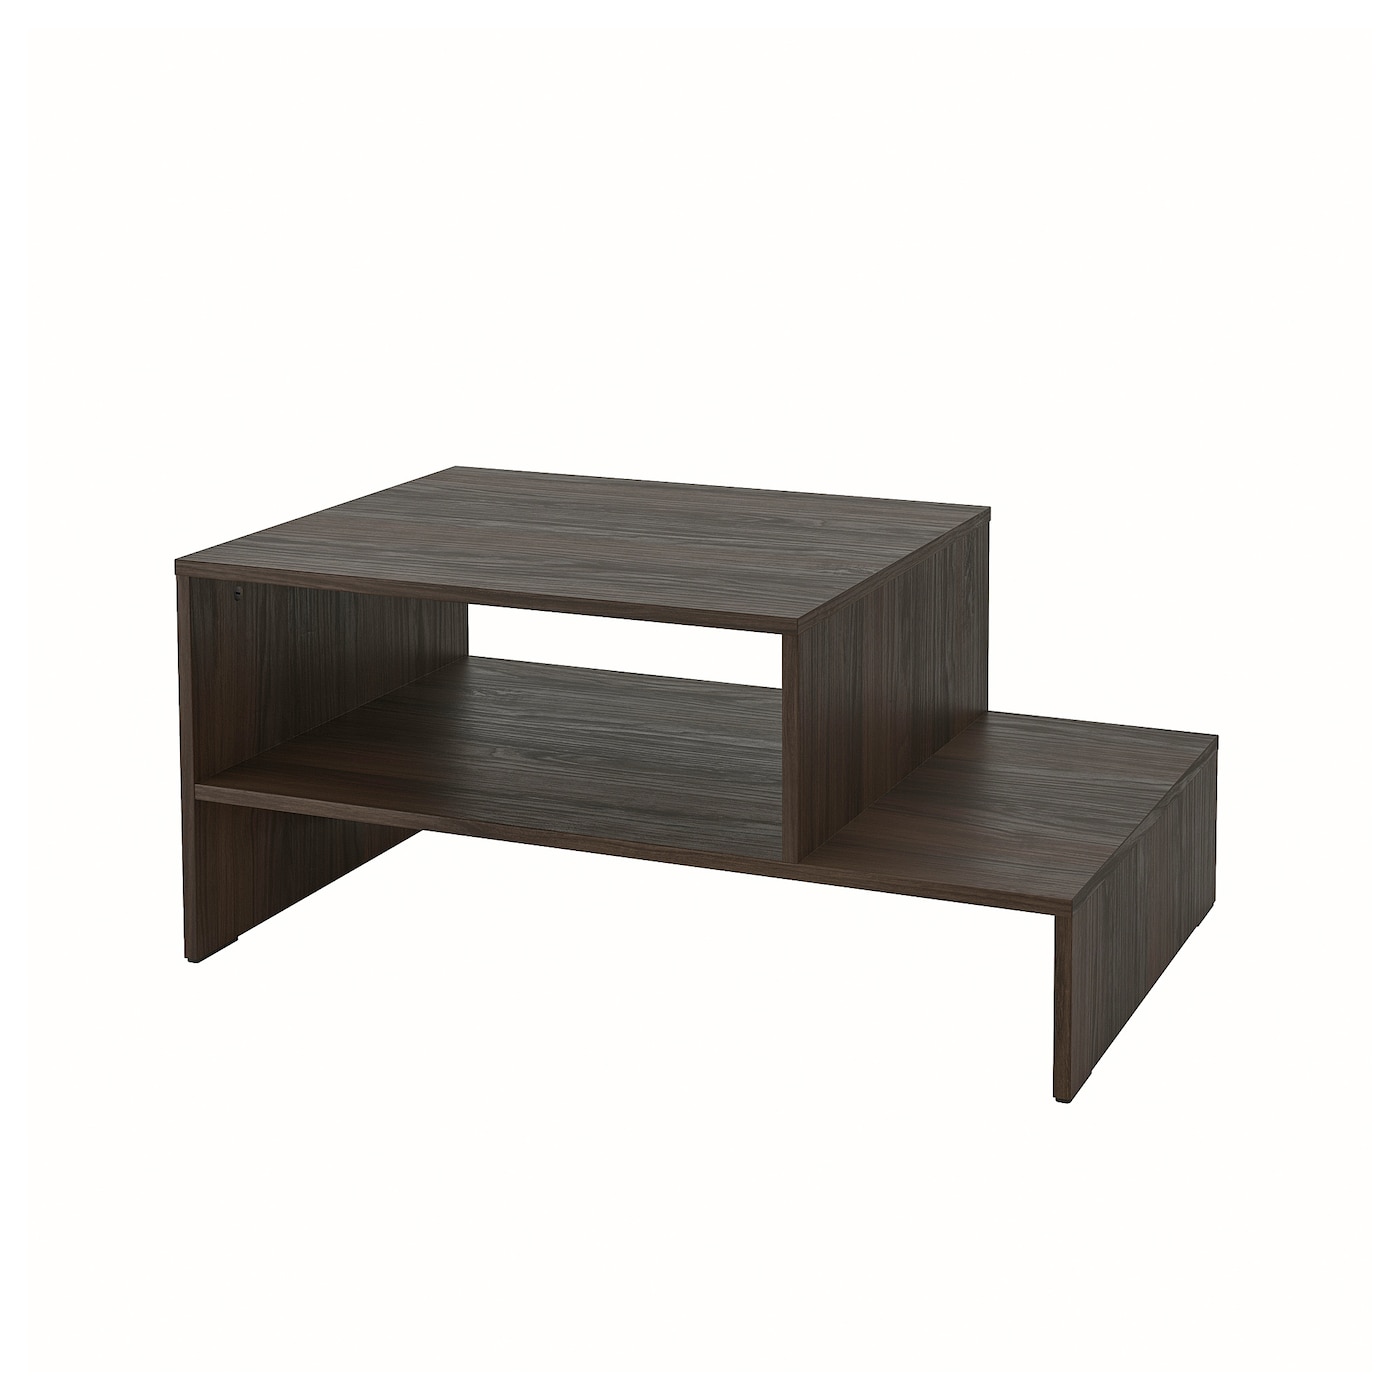 Журнальный стол - HOLMERUD IKEA/ ХОЛМЕРУД ИКЕА, 90x55 см, коричневый